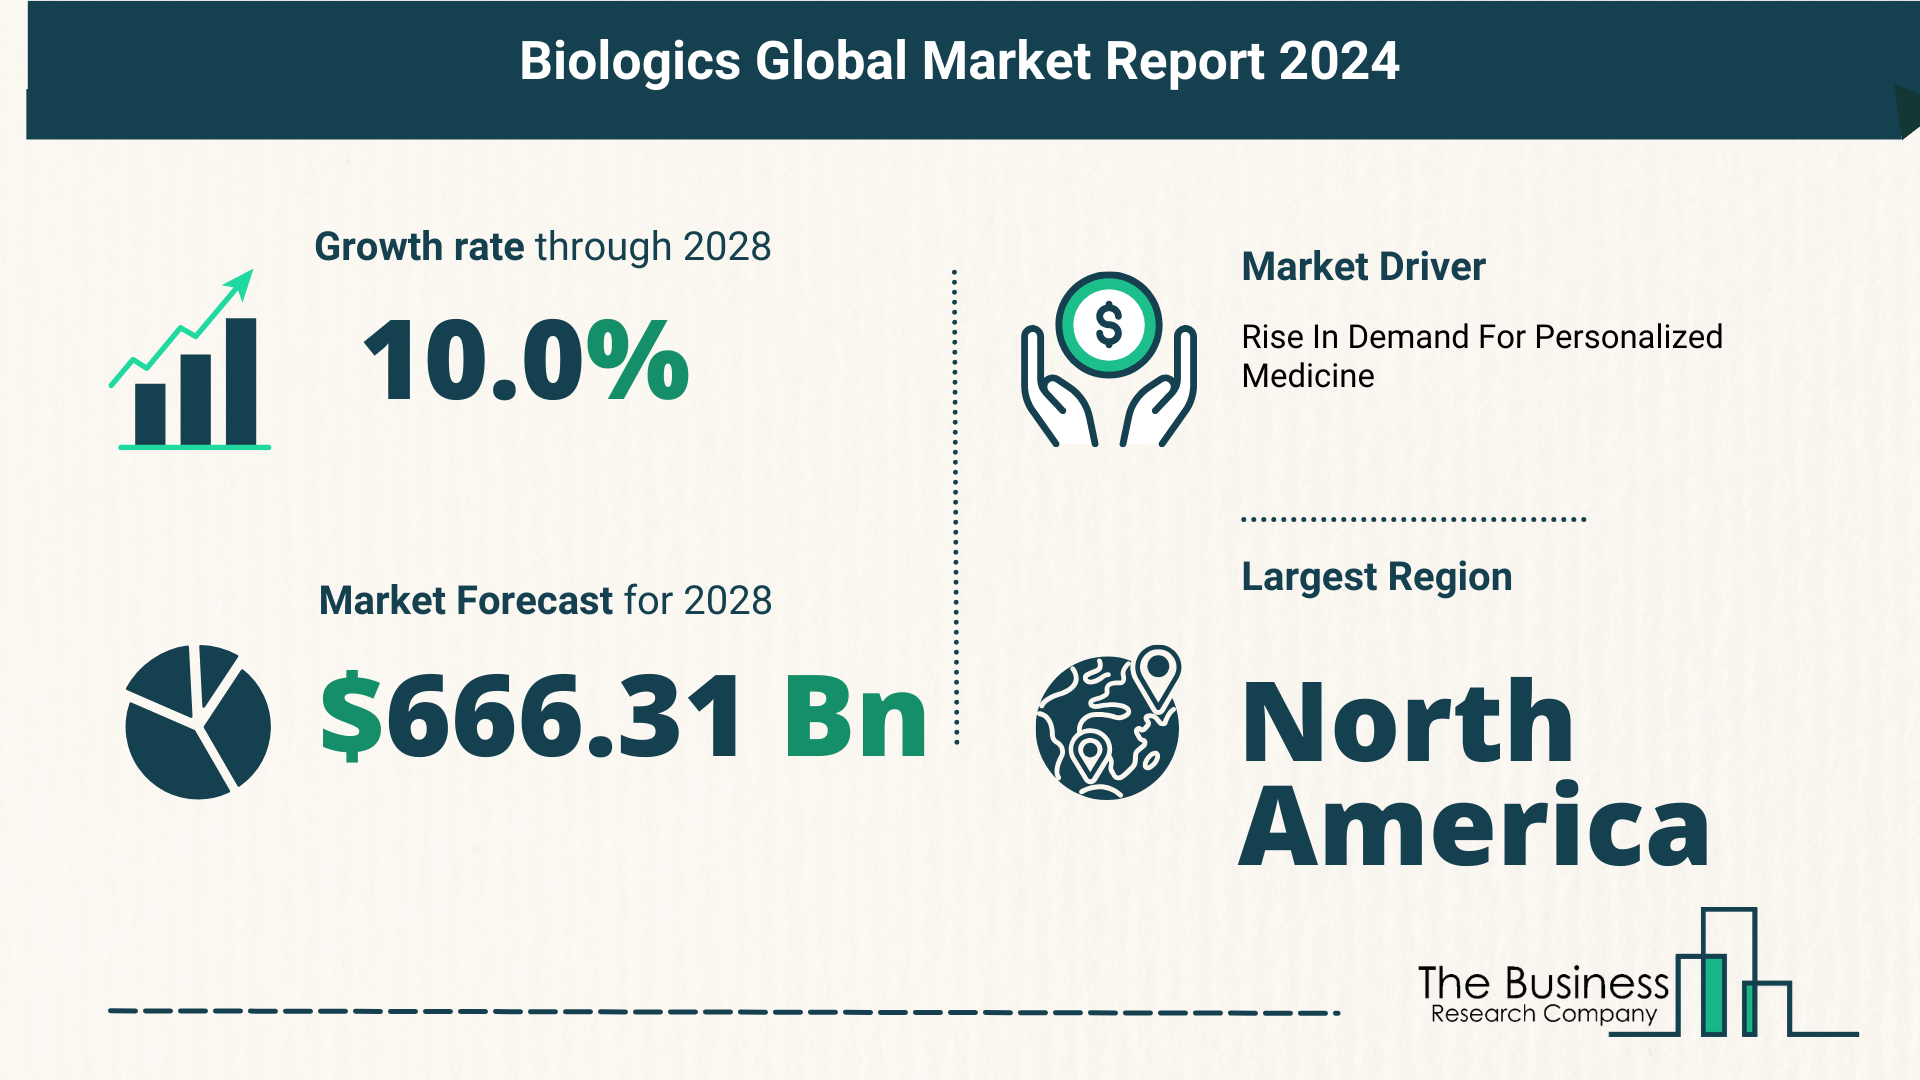 Global Biologics Market